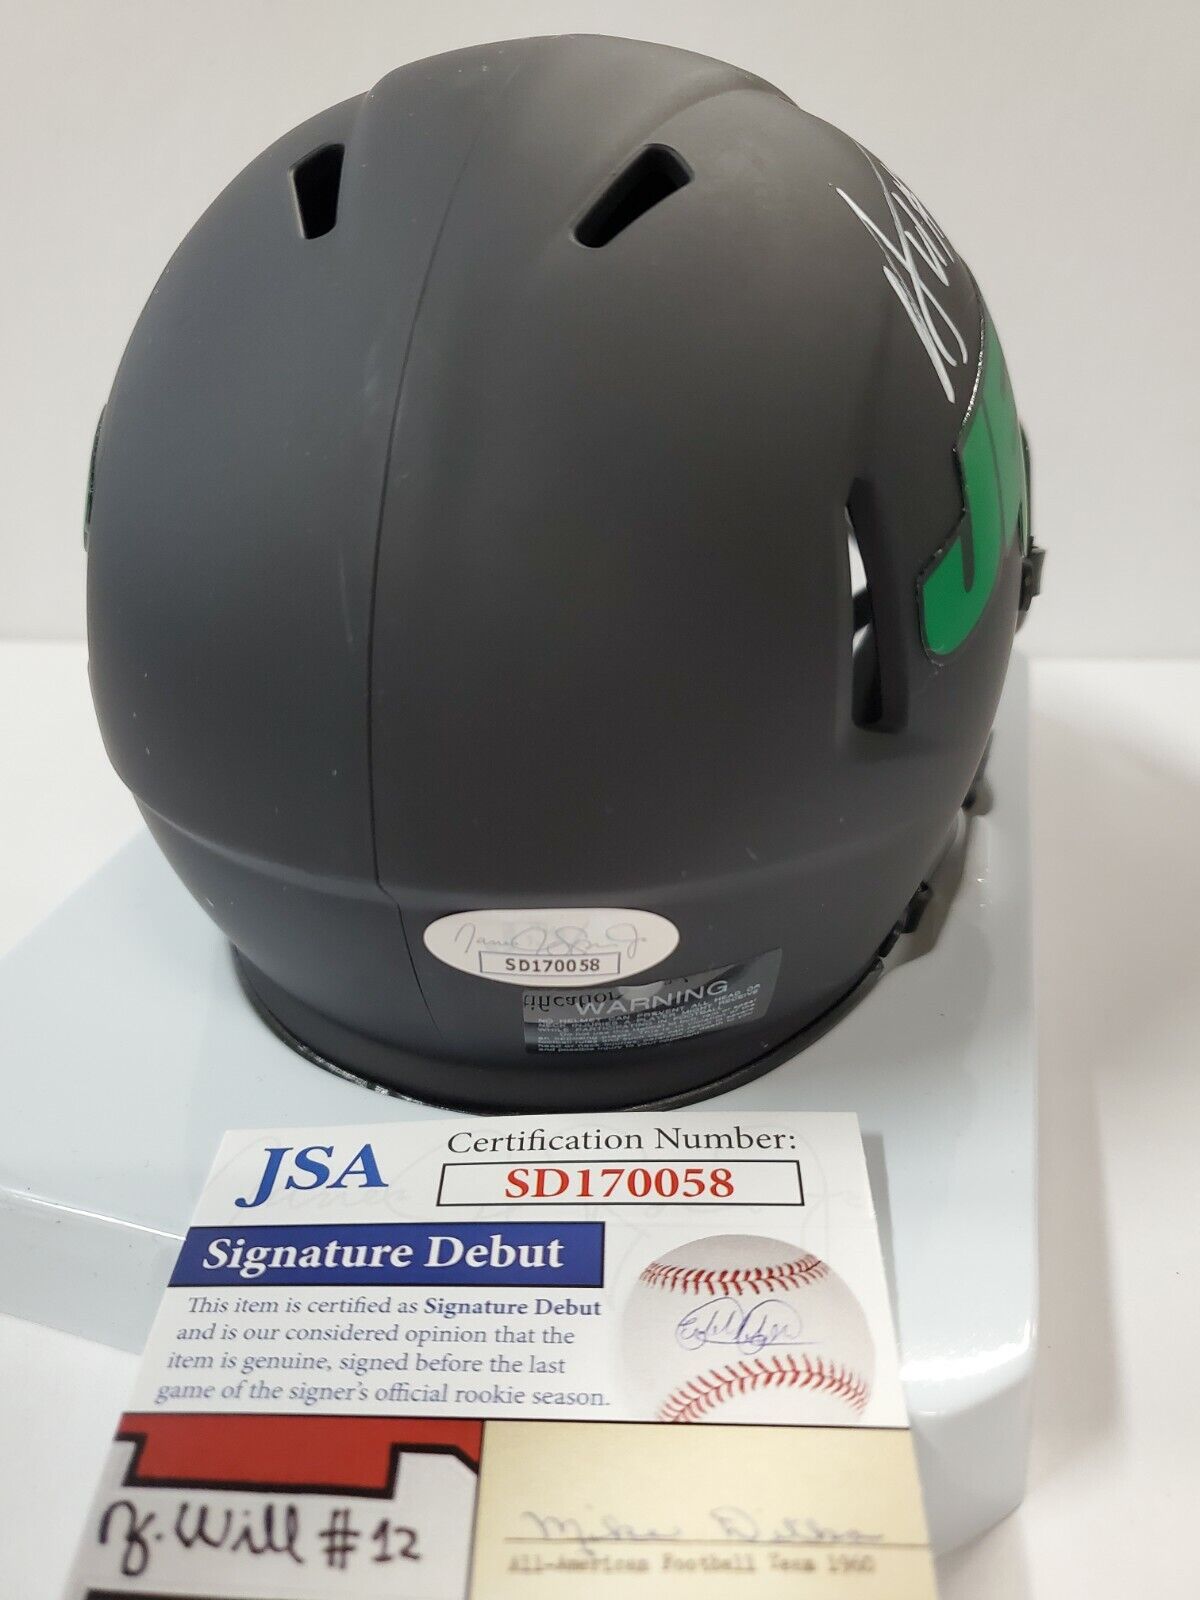 ny jets motorcycle helmet